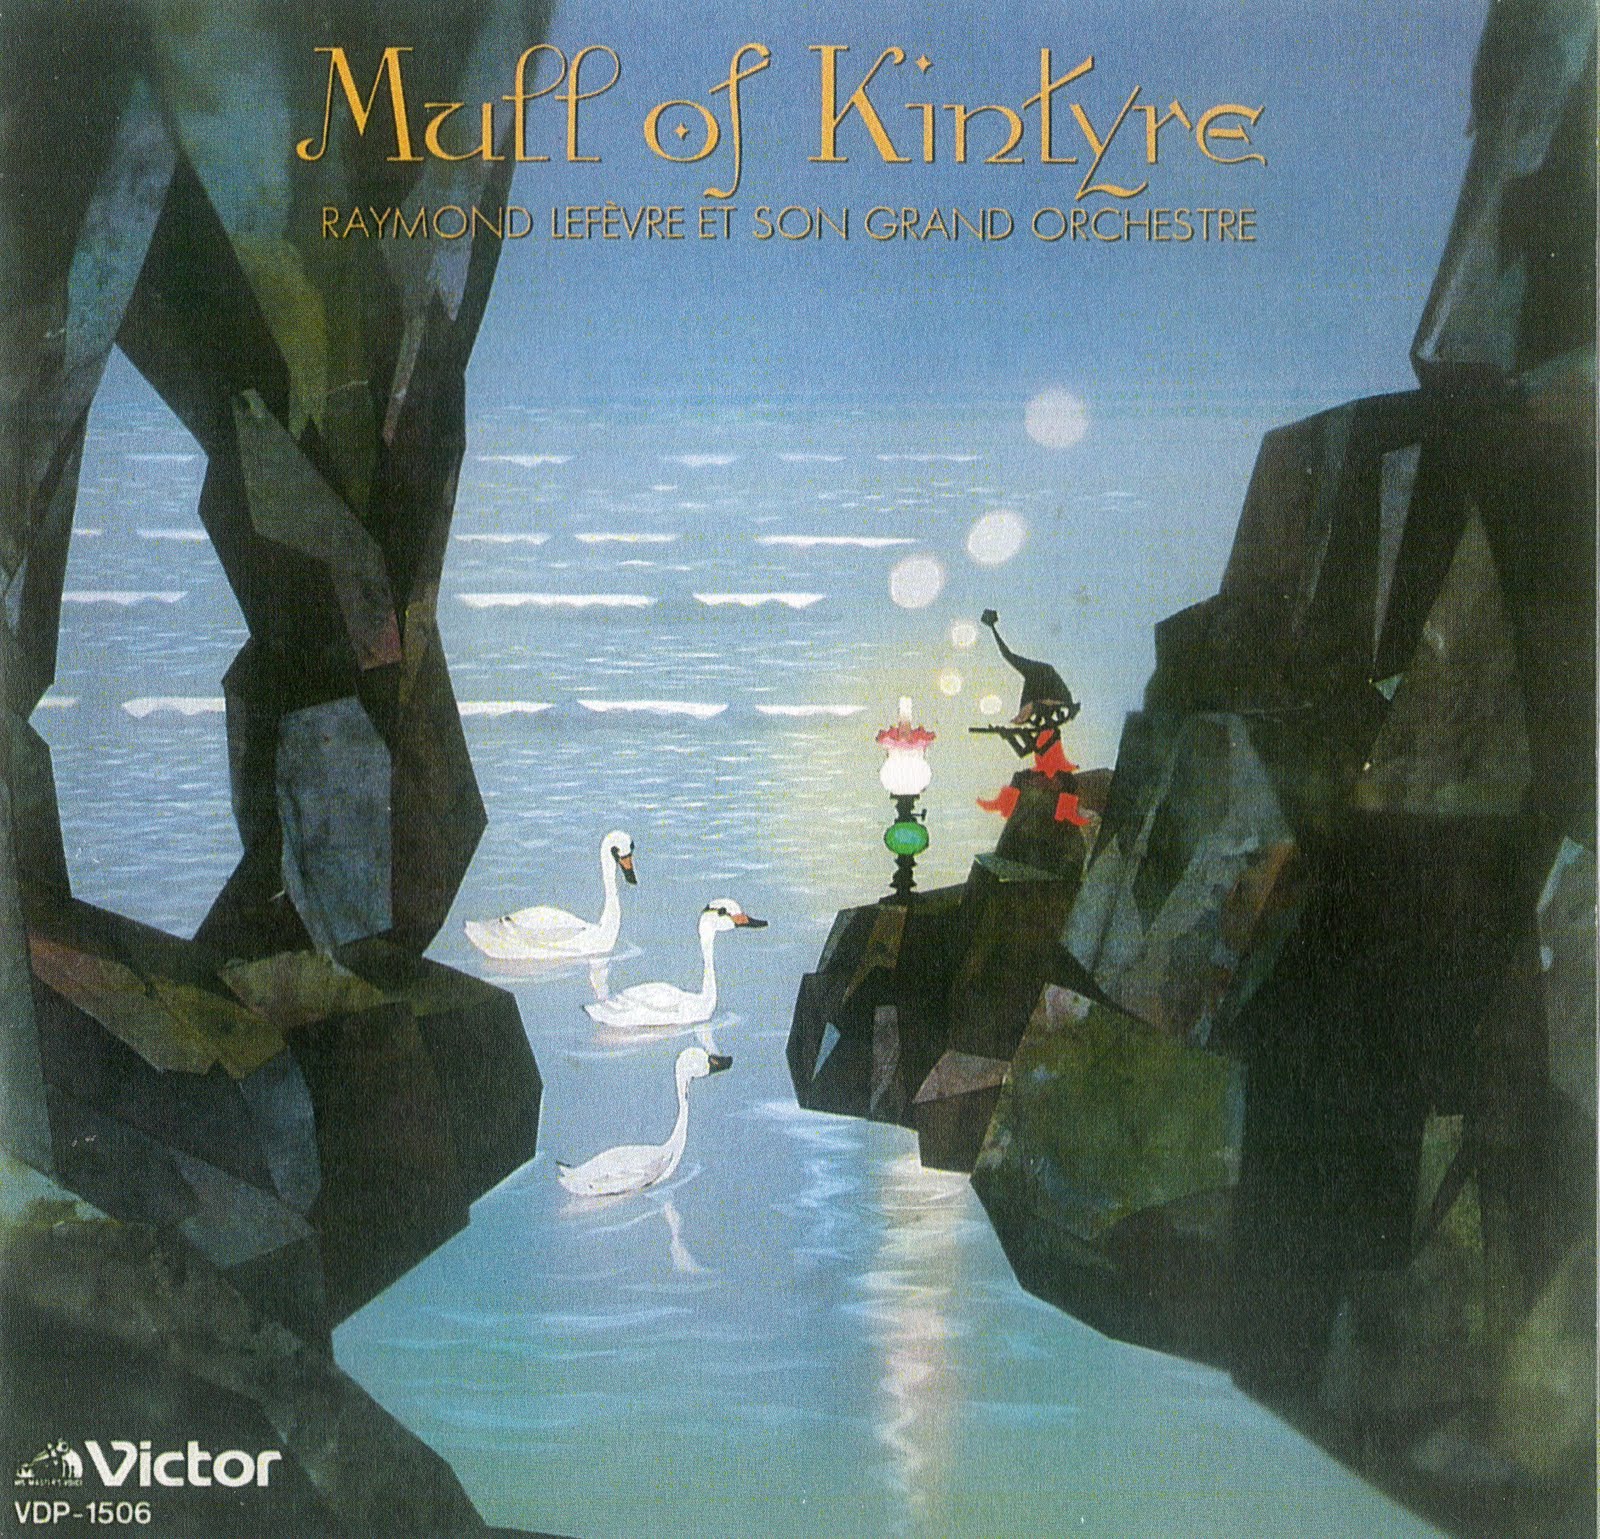 Mull of kintyre. Raymond Lefevre - et son Grand Orchestre 2003. Раймон Лефевр. Mull of Kintyre CD.